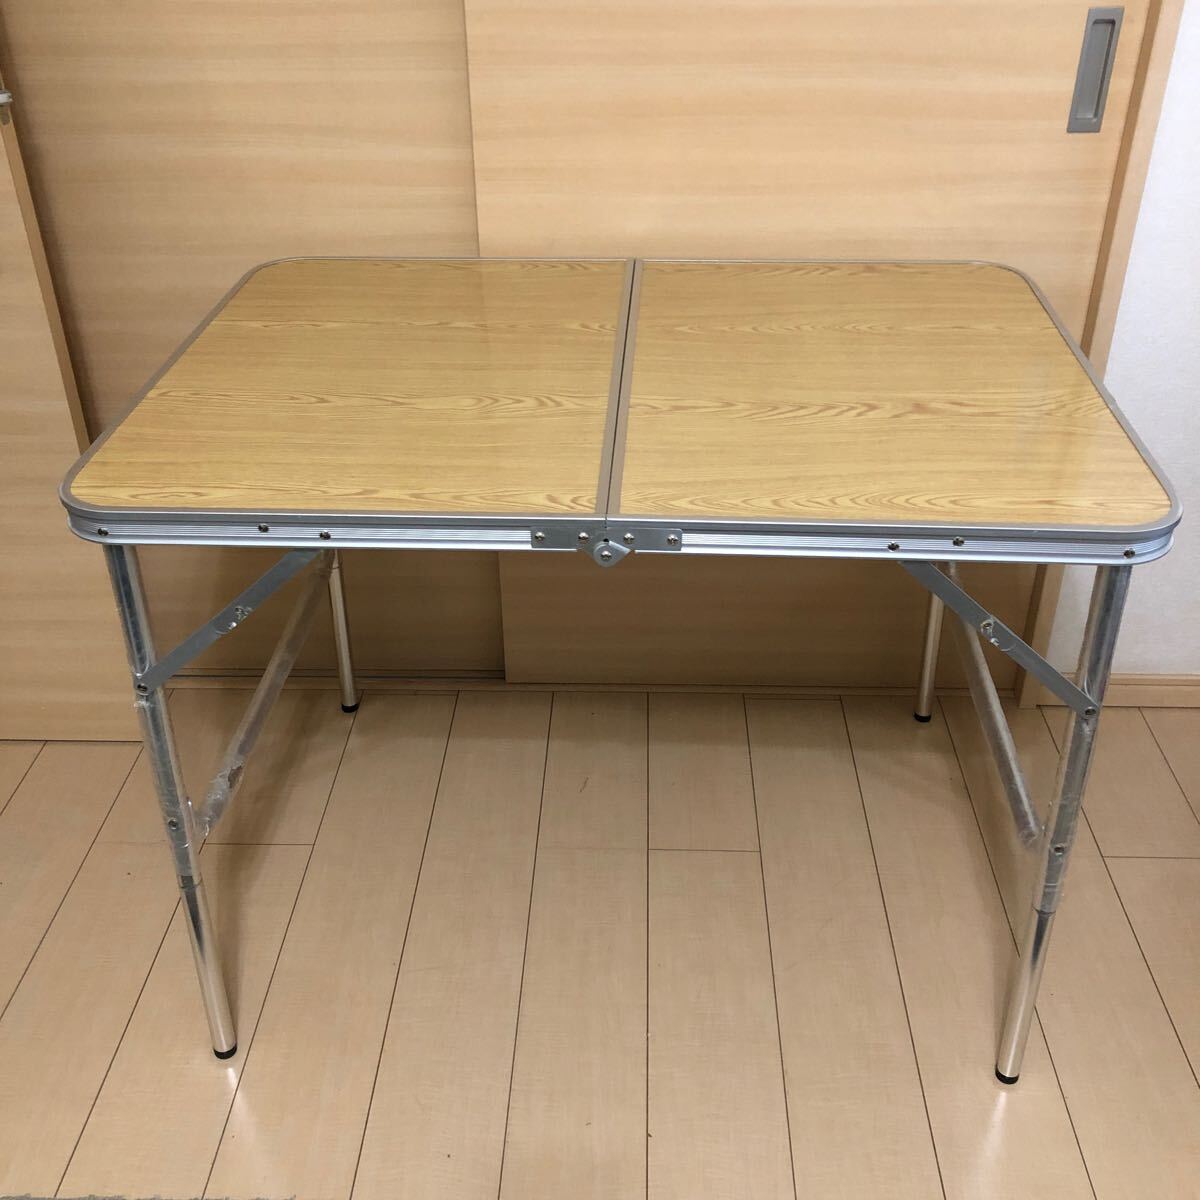 レジャーフォールディングテーブルATW-1070 サイズ:約98 X 70 X 70 cm 折り畳みテーブル アウトドア 